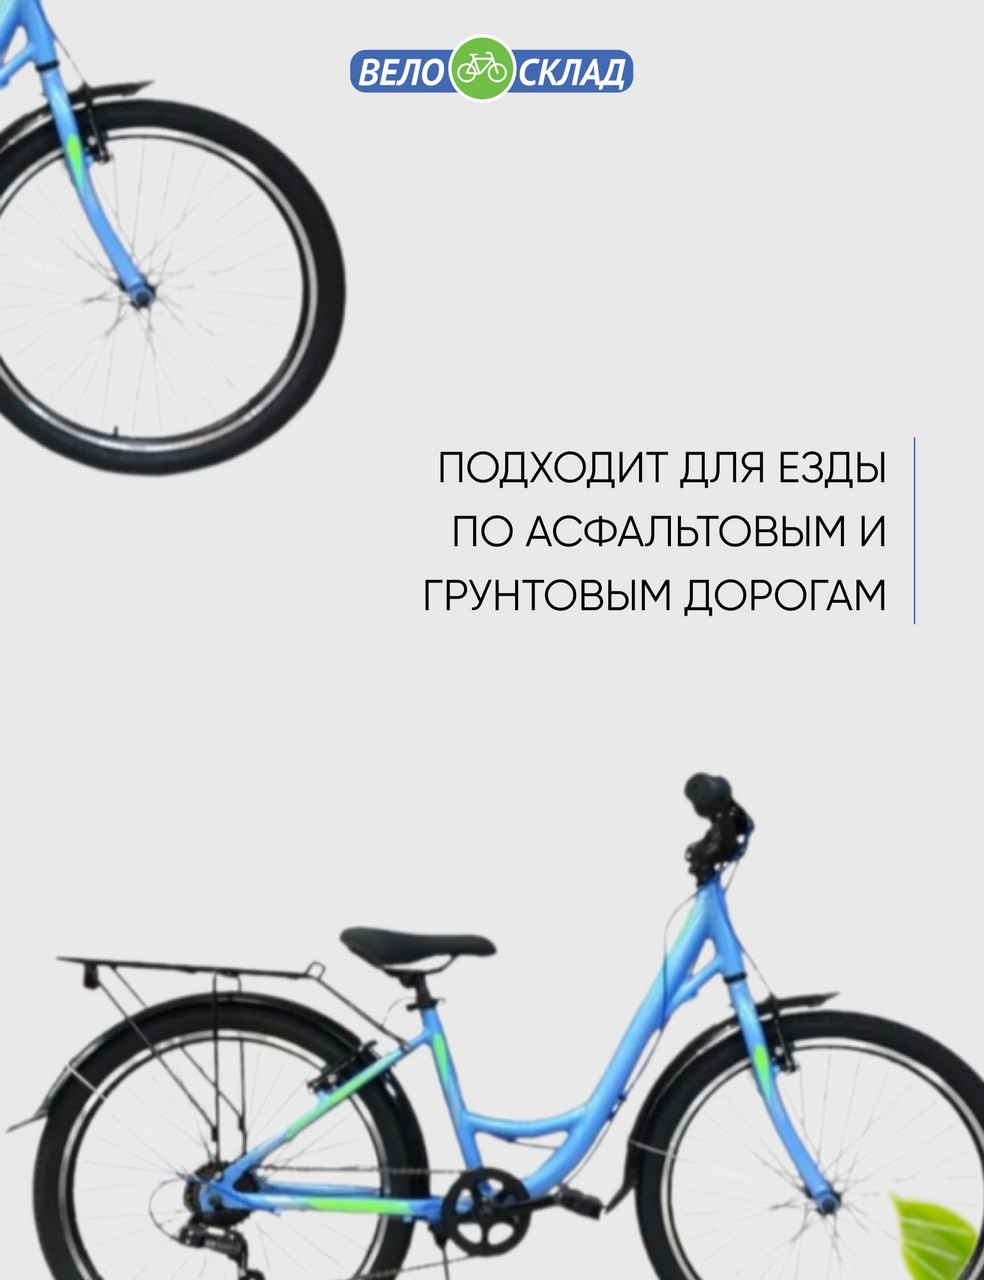 Подростковый велосипед Stels Miss 4300 V 24 V010, год 2022, цвет Синий, ростовка 14